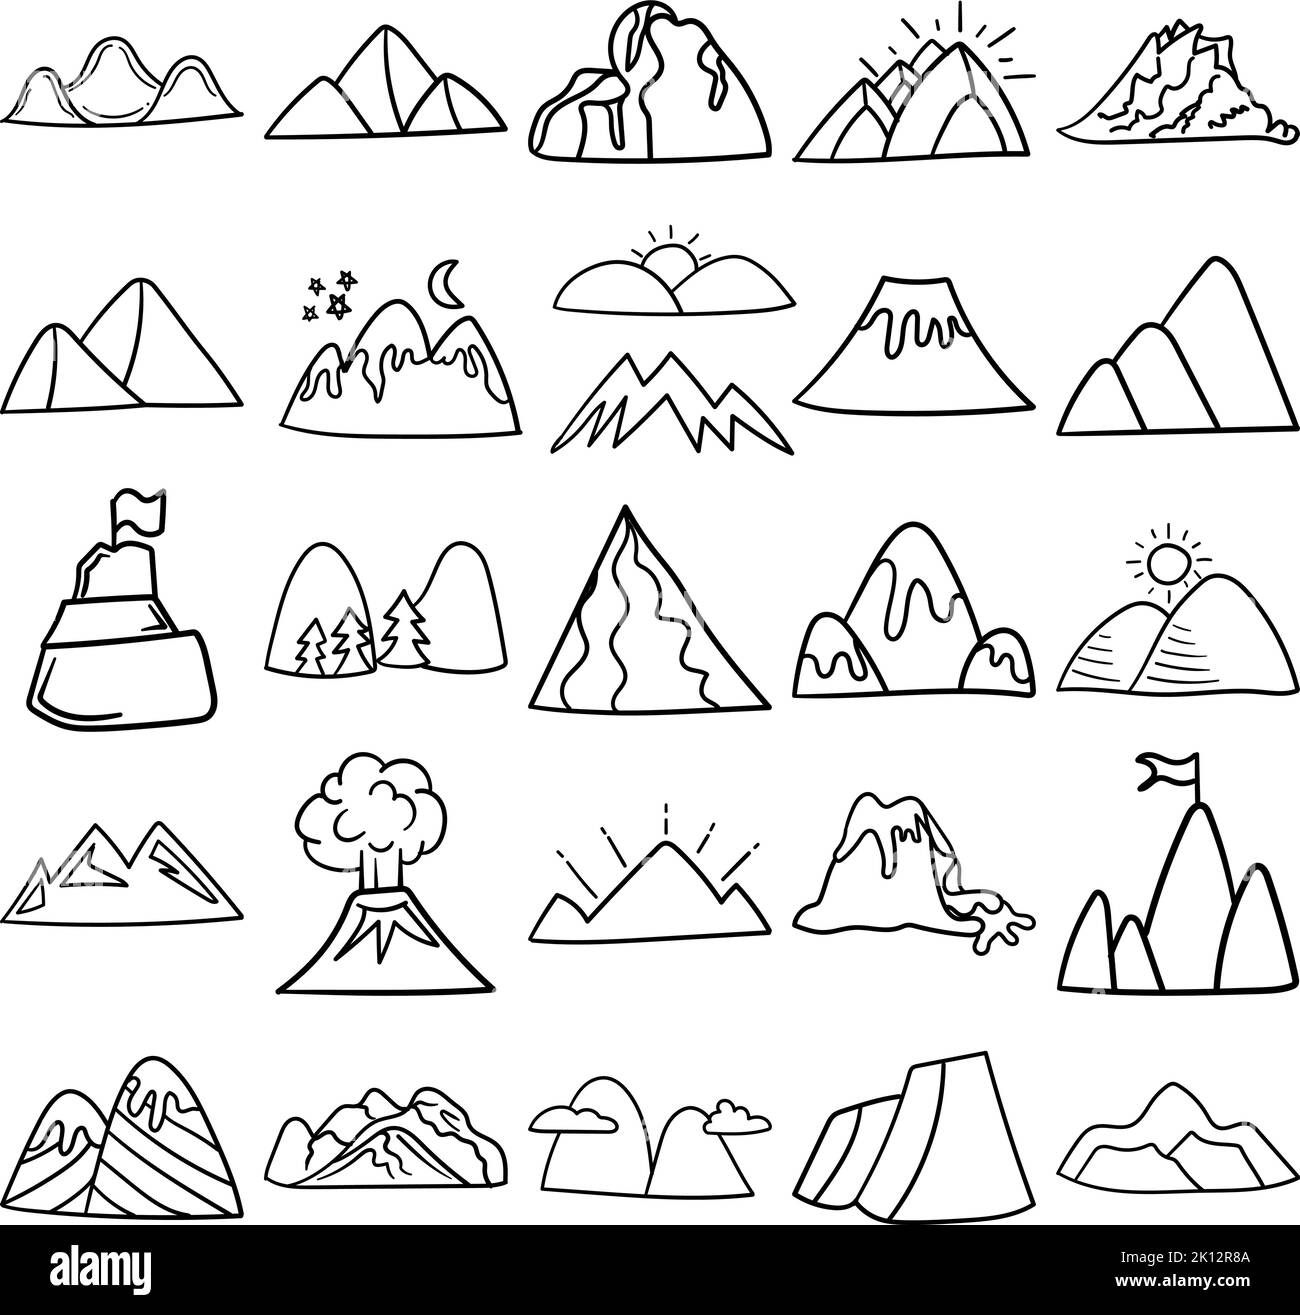 Montagne disegnate a mano Doodle Line Art Outline Set contenente montagna, montagne, scogliera, picco, pile, crinale, sierra, vulcano, alp, banca, butte Illustrazione Vettoriale